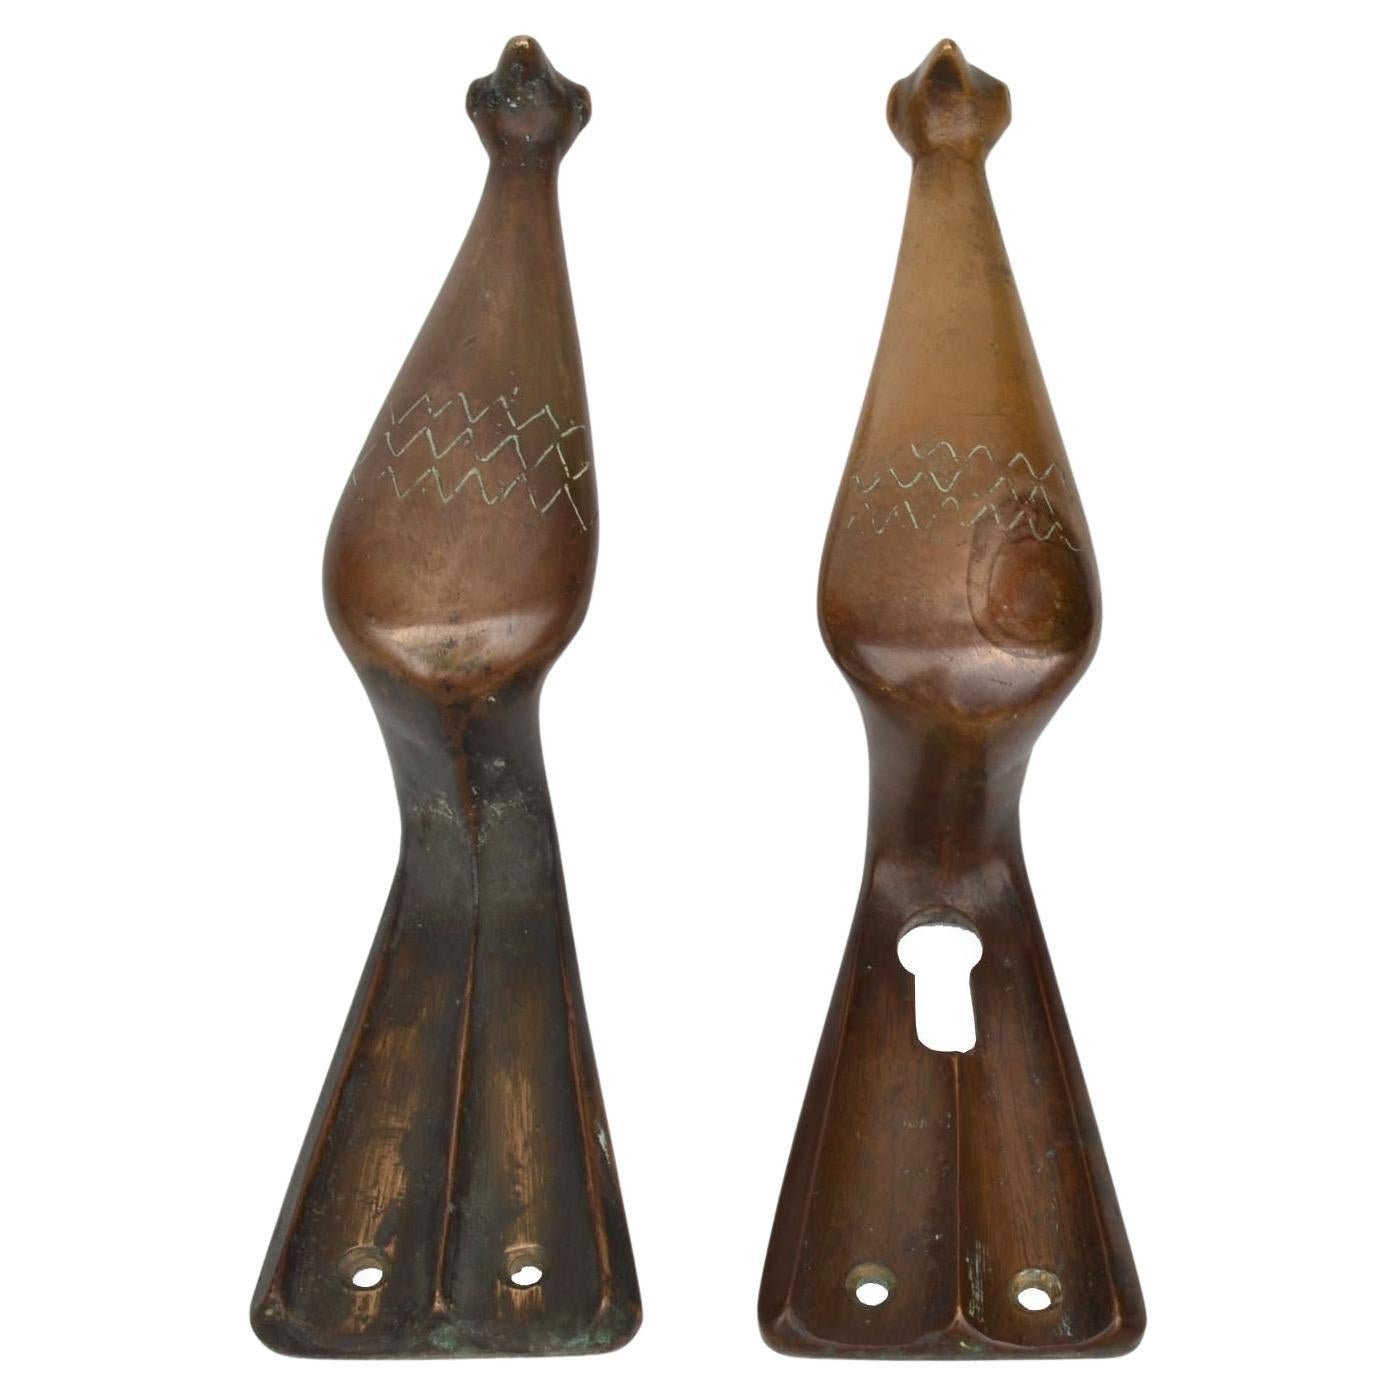 Paar Türdrücker und -zieher aus Bronze mit originaler Patina.
Tauben gelten seit langem als Symbol für den ewigen Frieden. Das Wort 